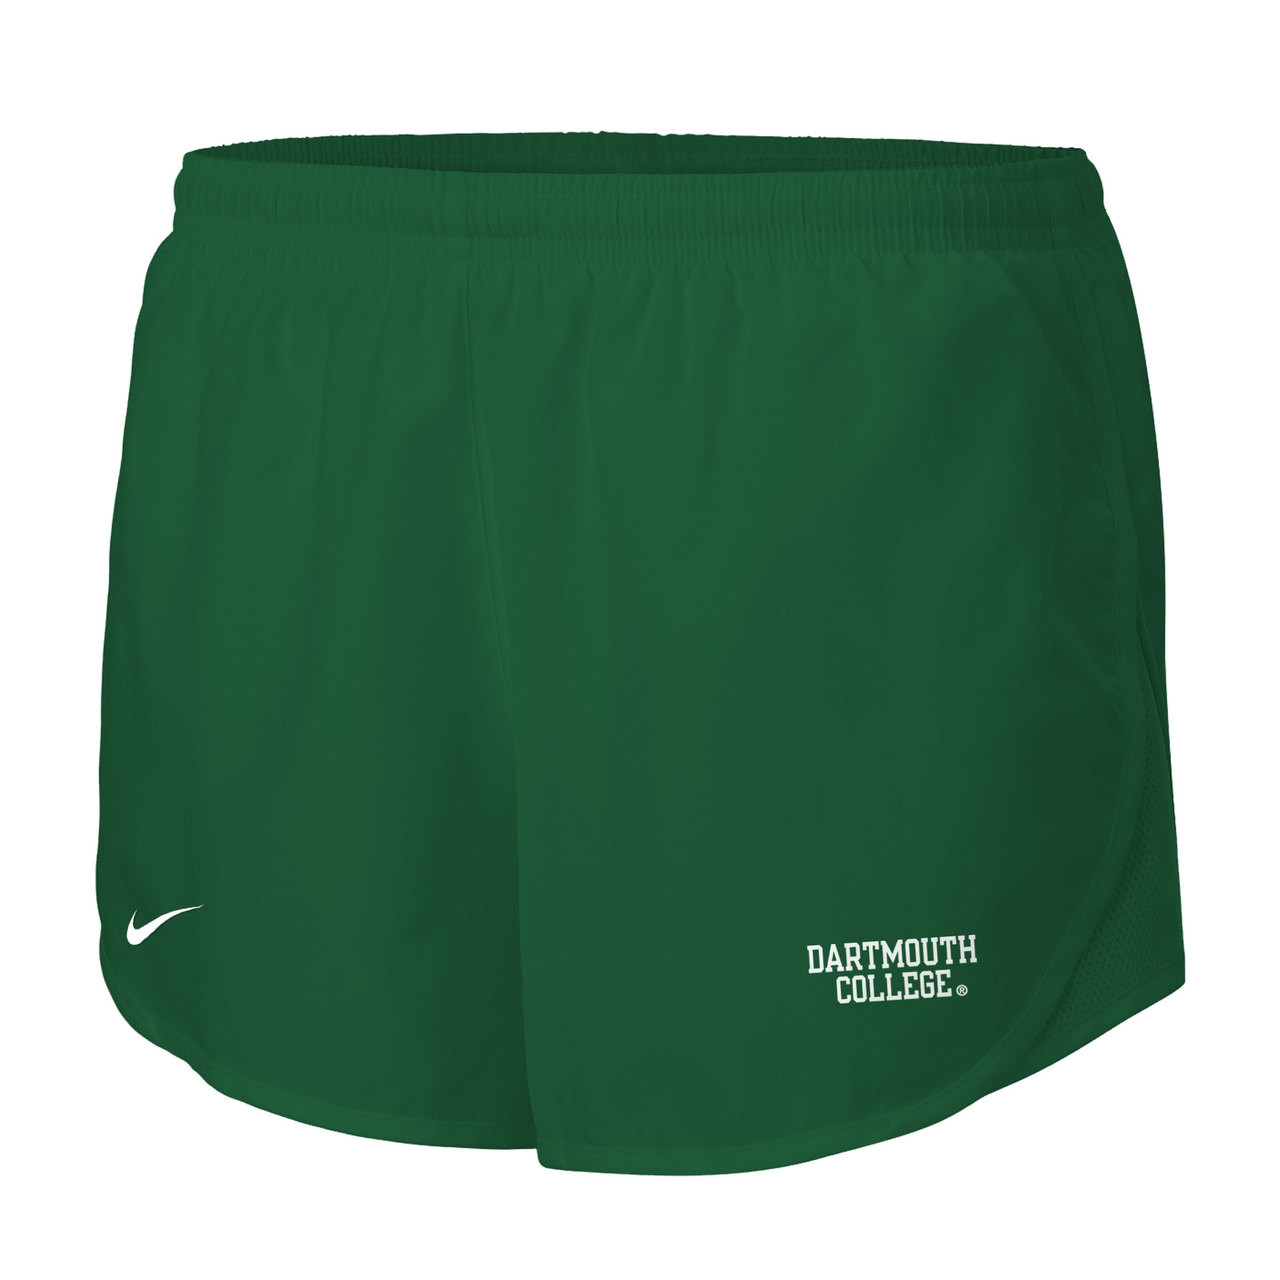 Dartmouth women's shorts, Nike shorts